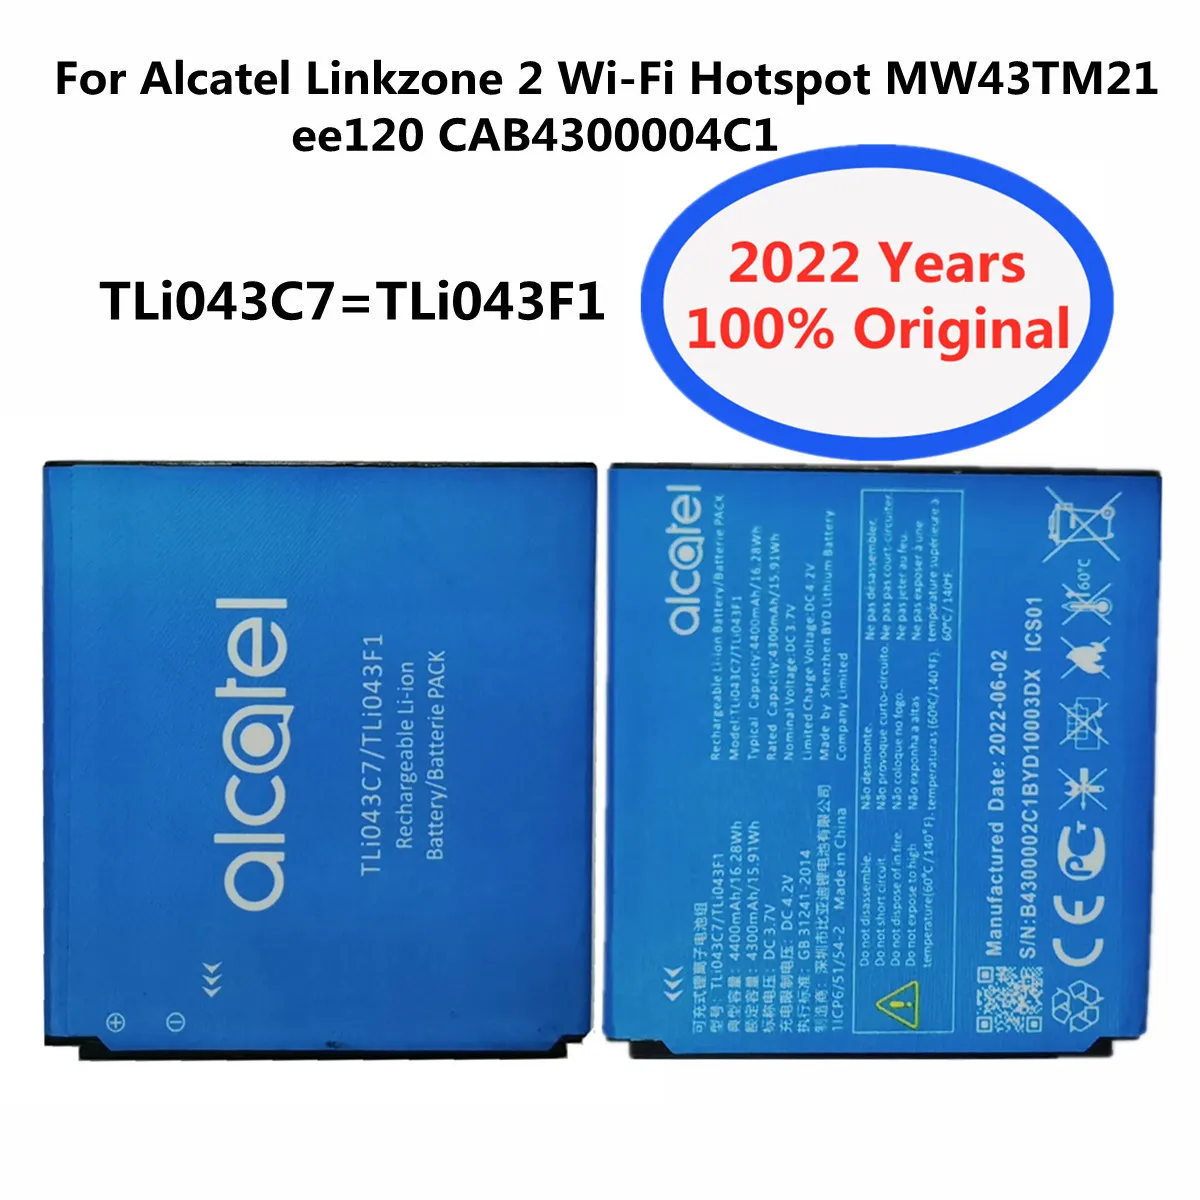 2022 Оригинална Батерия за телефон TLi043C7 TLi043F1 За Alcatel Linkzone 2 Wi-Fi Точка за Достъп MW43TM21 ee120 CAB4300004C1 Акумулаторни Батерии